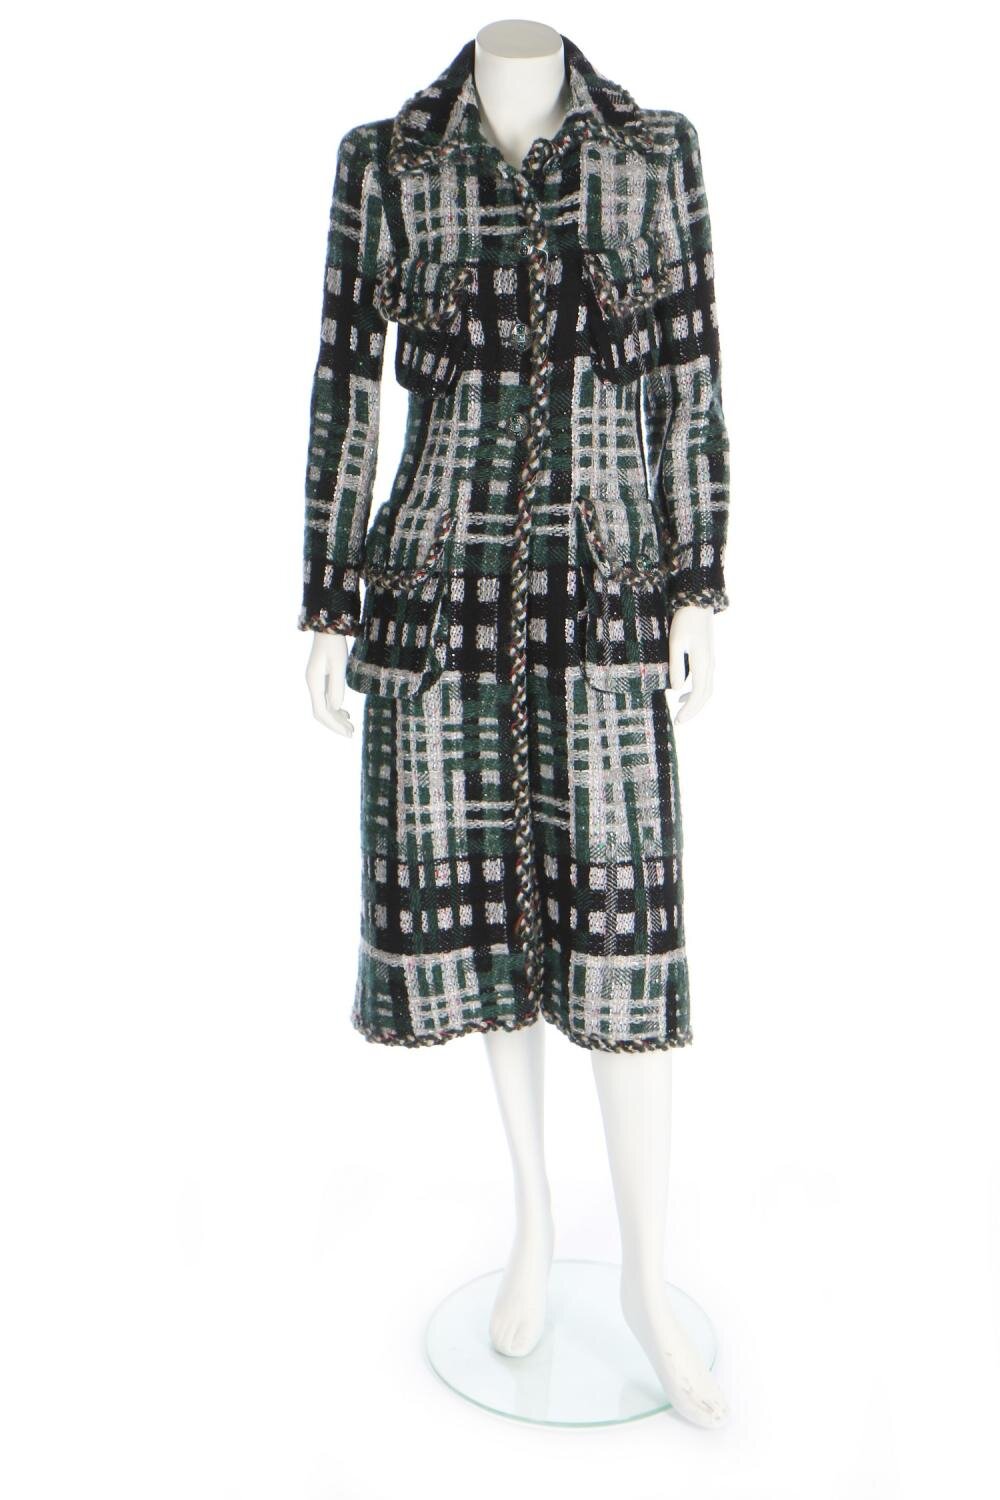 Chanel Tweed Scarf Coat — UFO No More